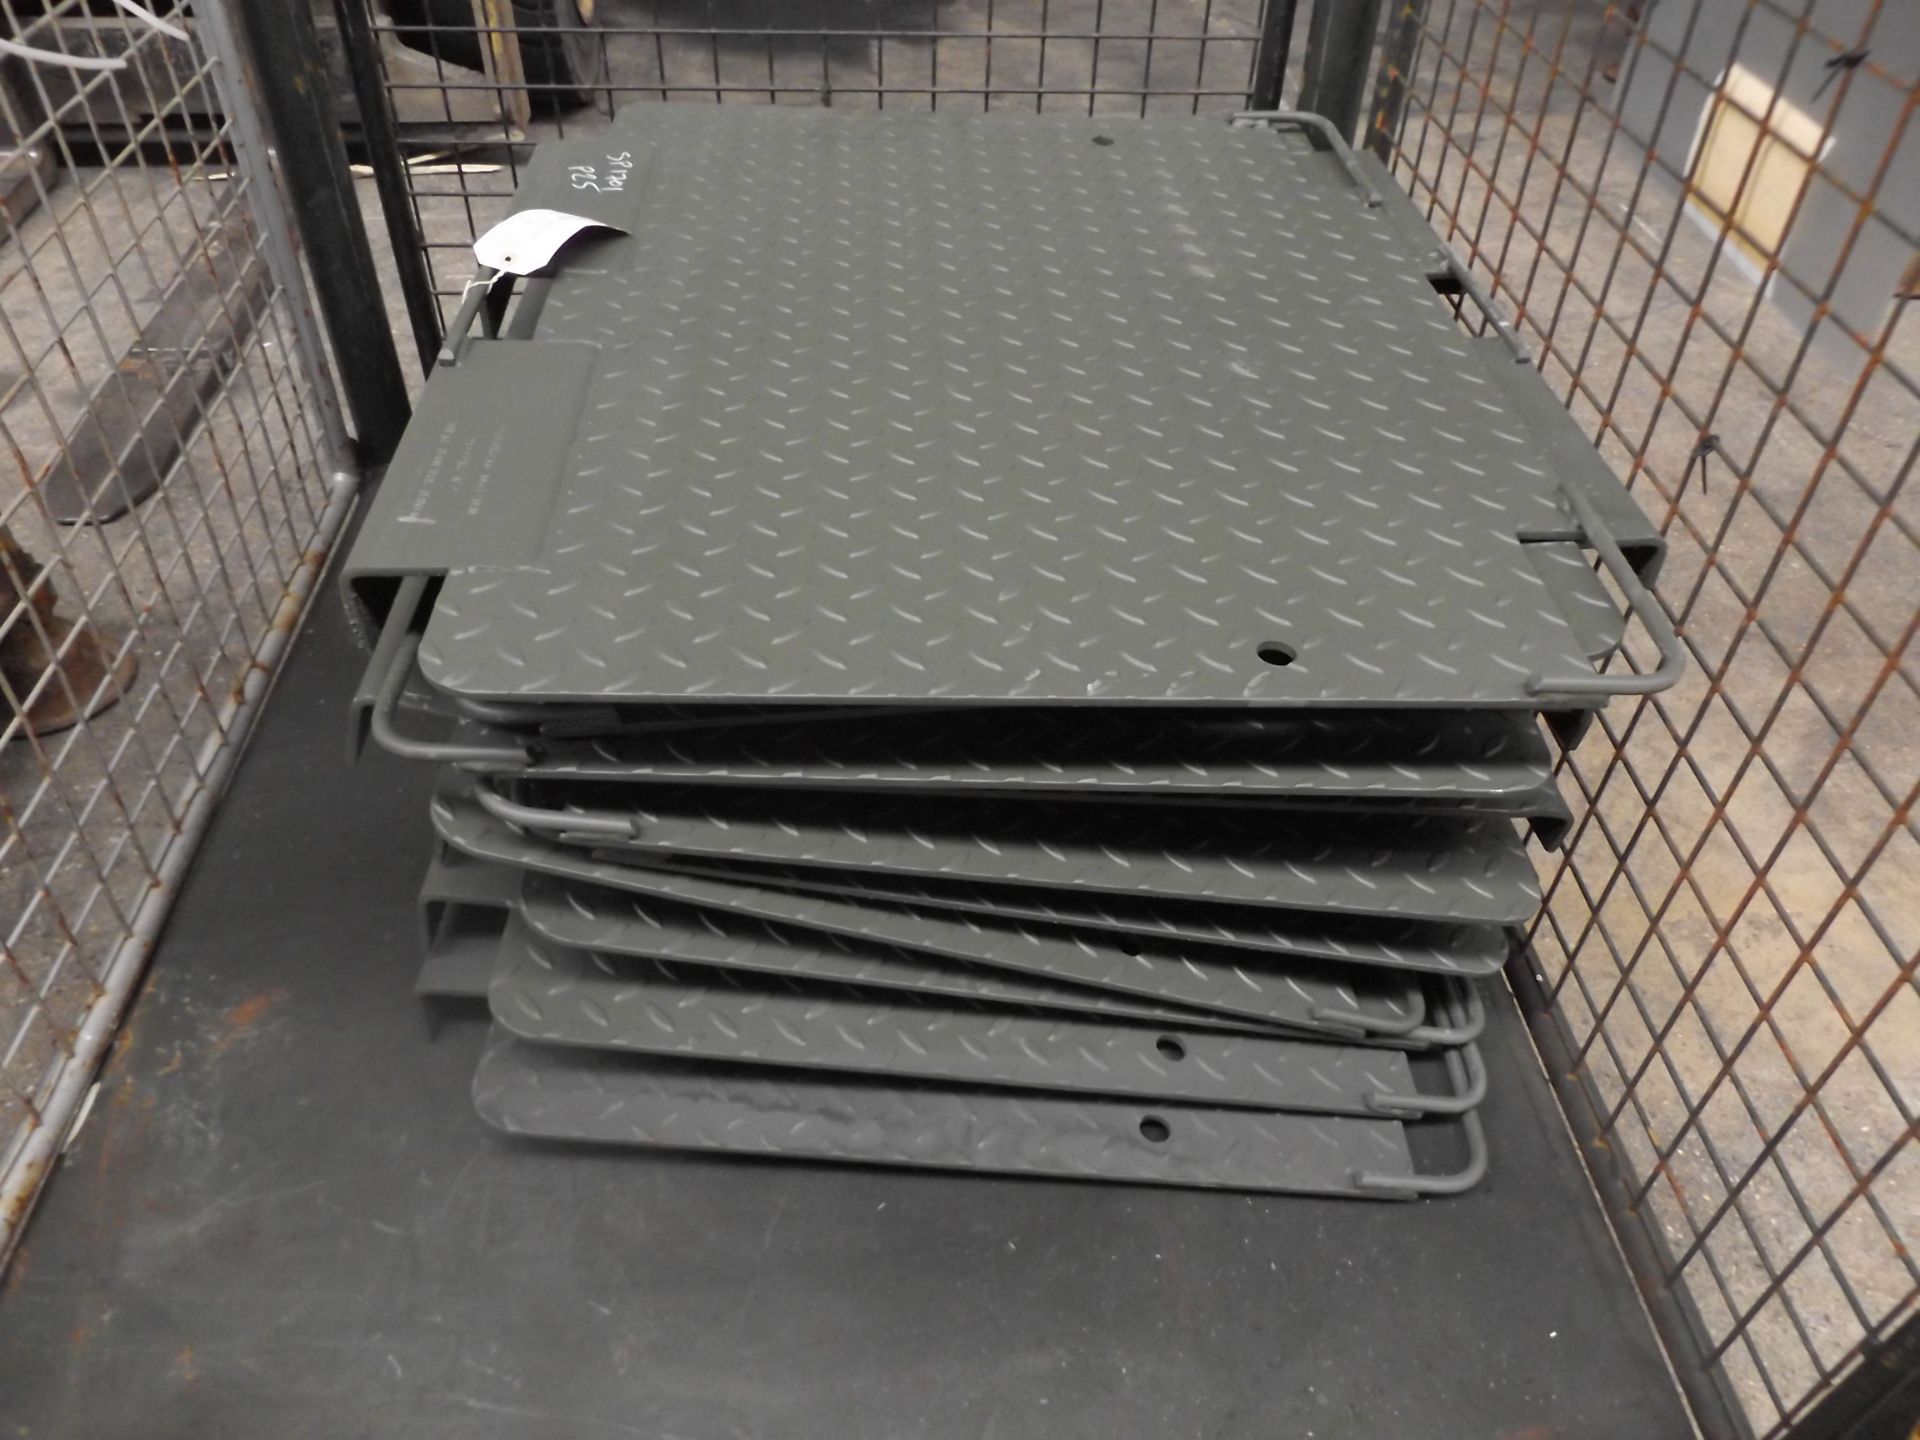 10 x Entwistle Load Spreader Plates P/No FV2176536